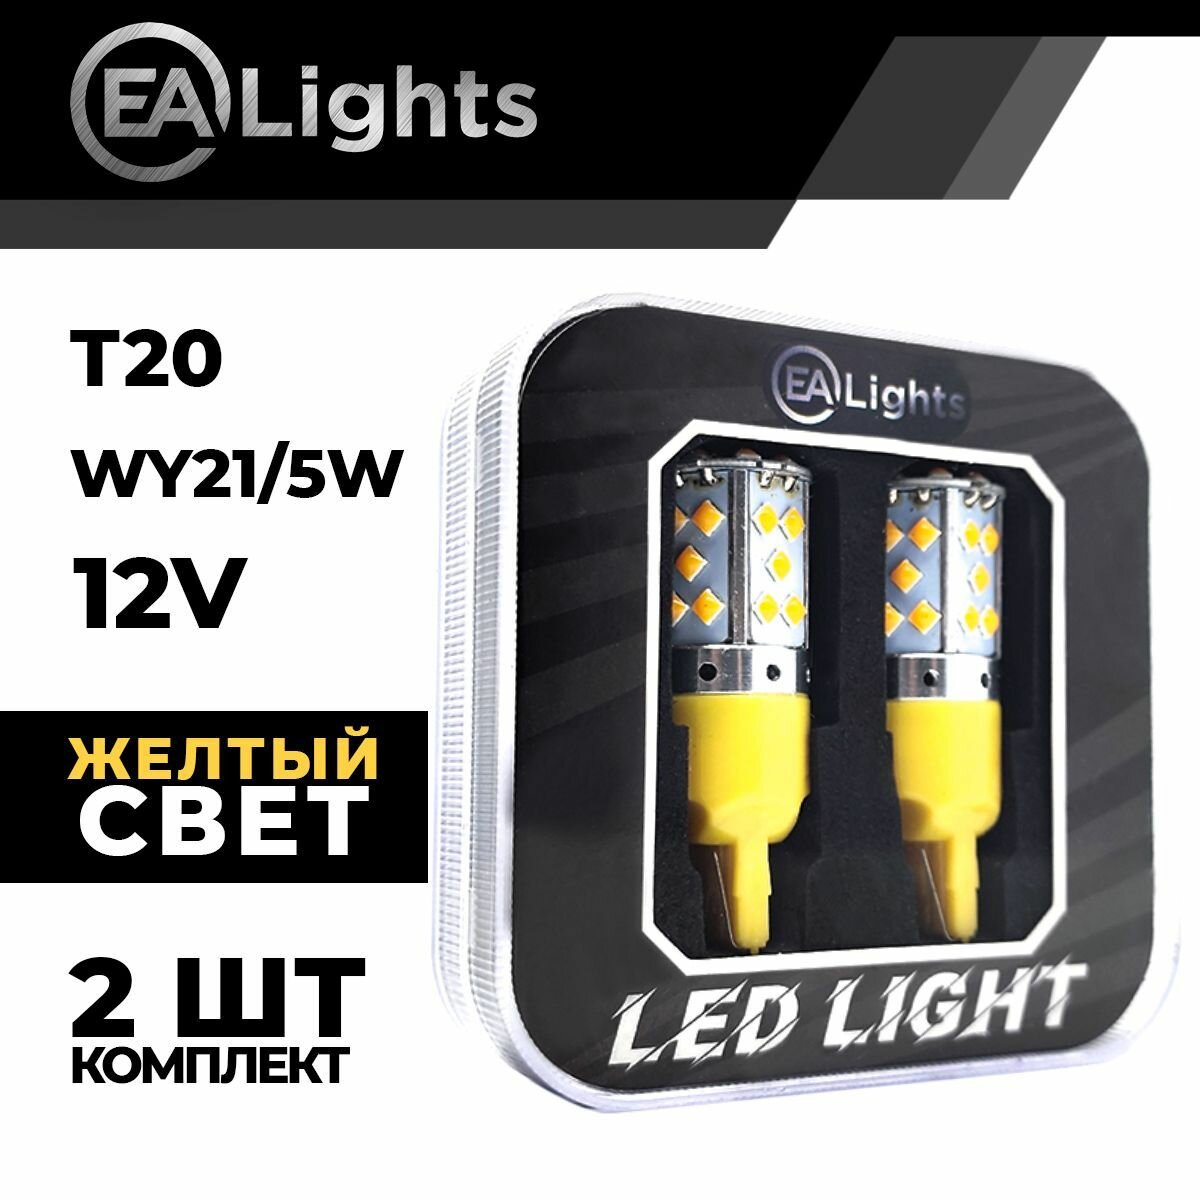 Автомобильная светодиодная LED лампа T20 WY21/5W (чип 3030-35) для указателей поворота 12в желтый свет 2 шт